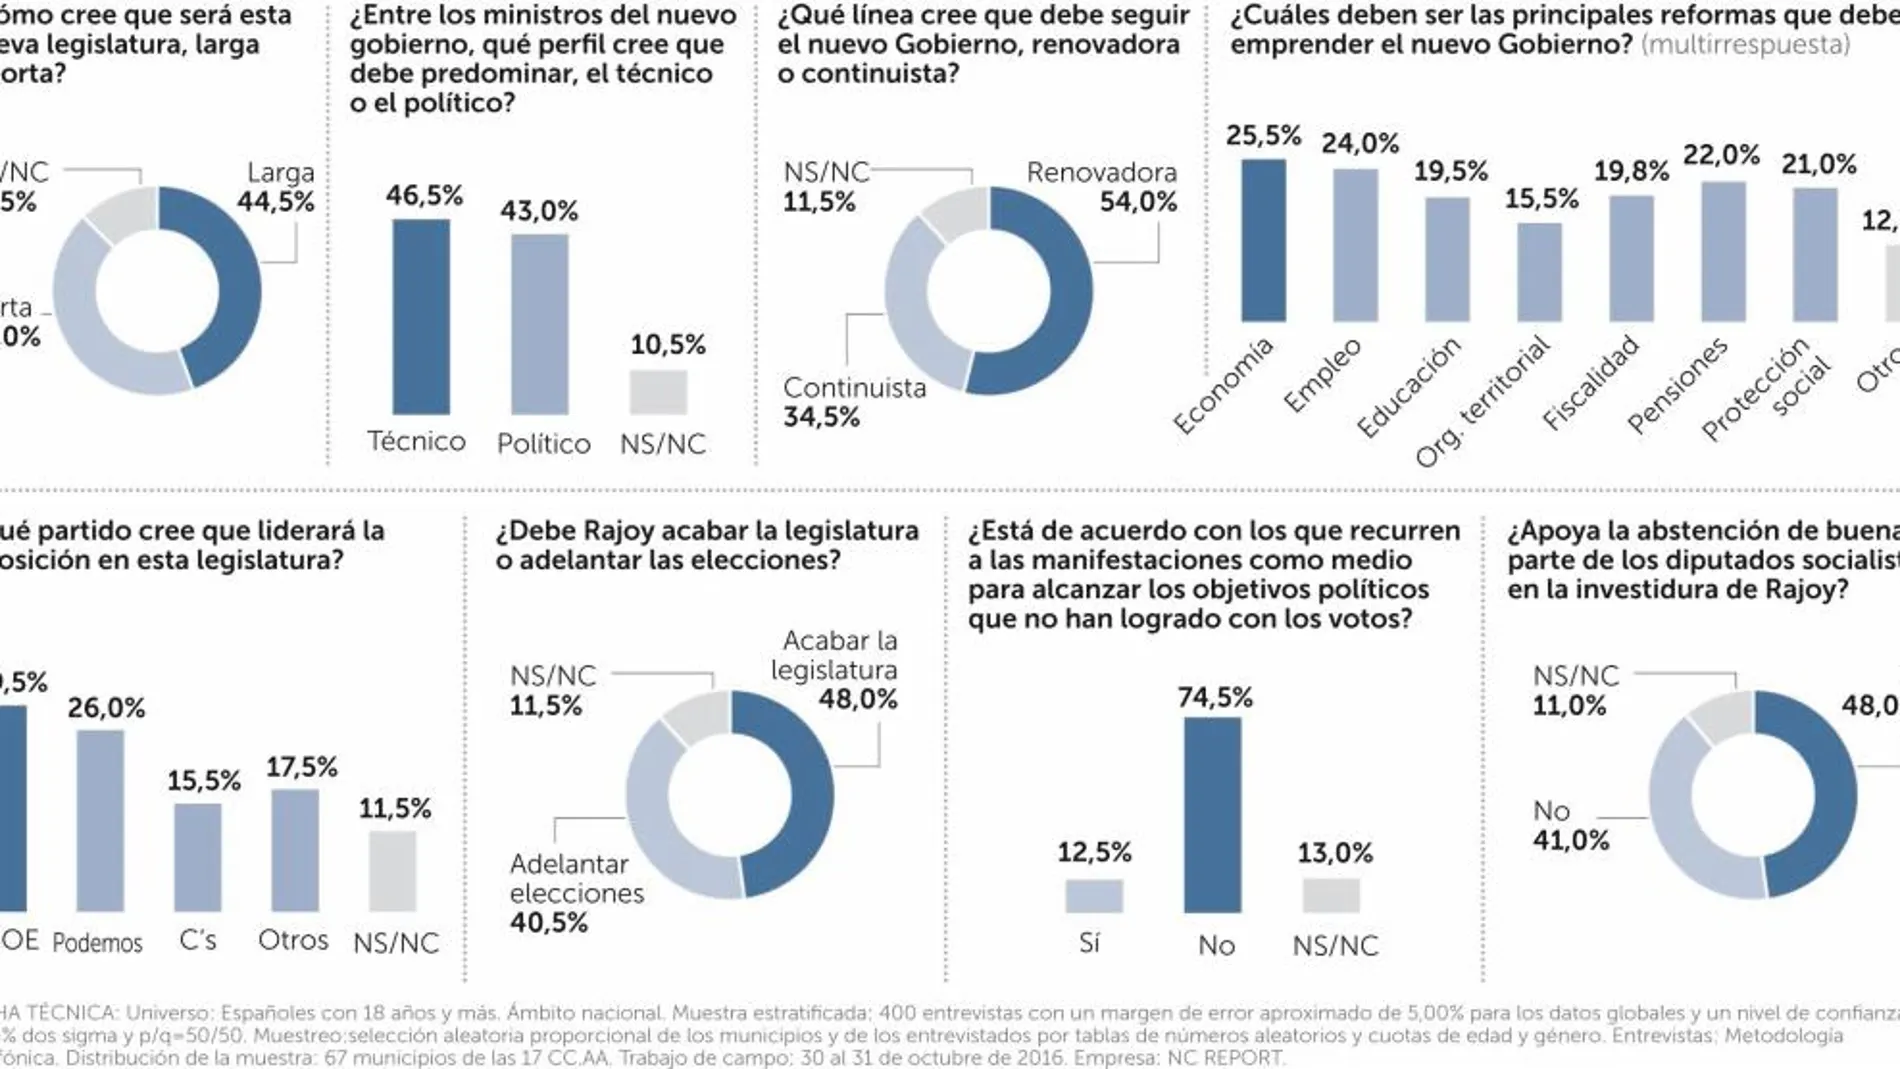 La mayoría quiere una legislatura larga y centrada en la economía